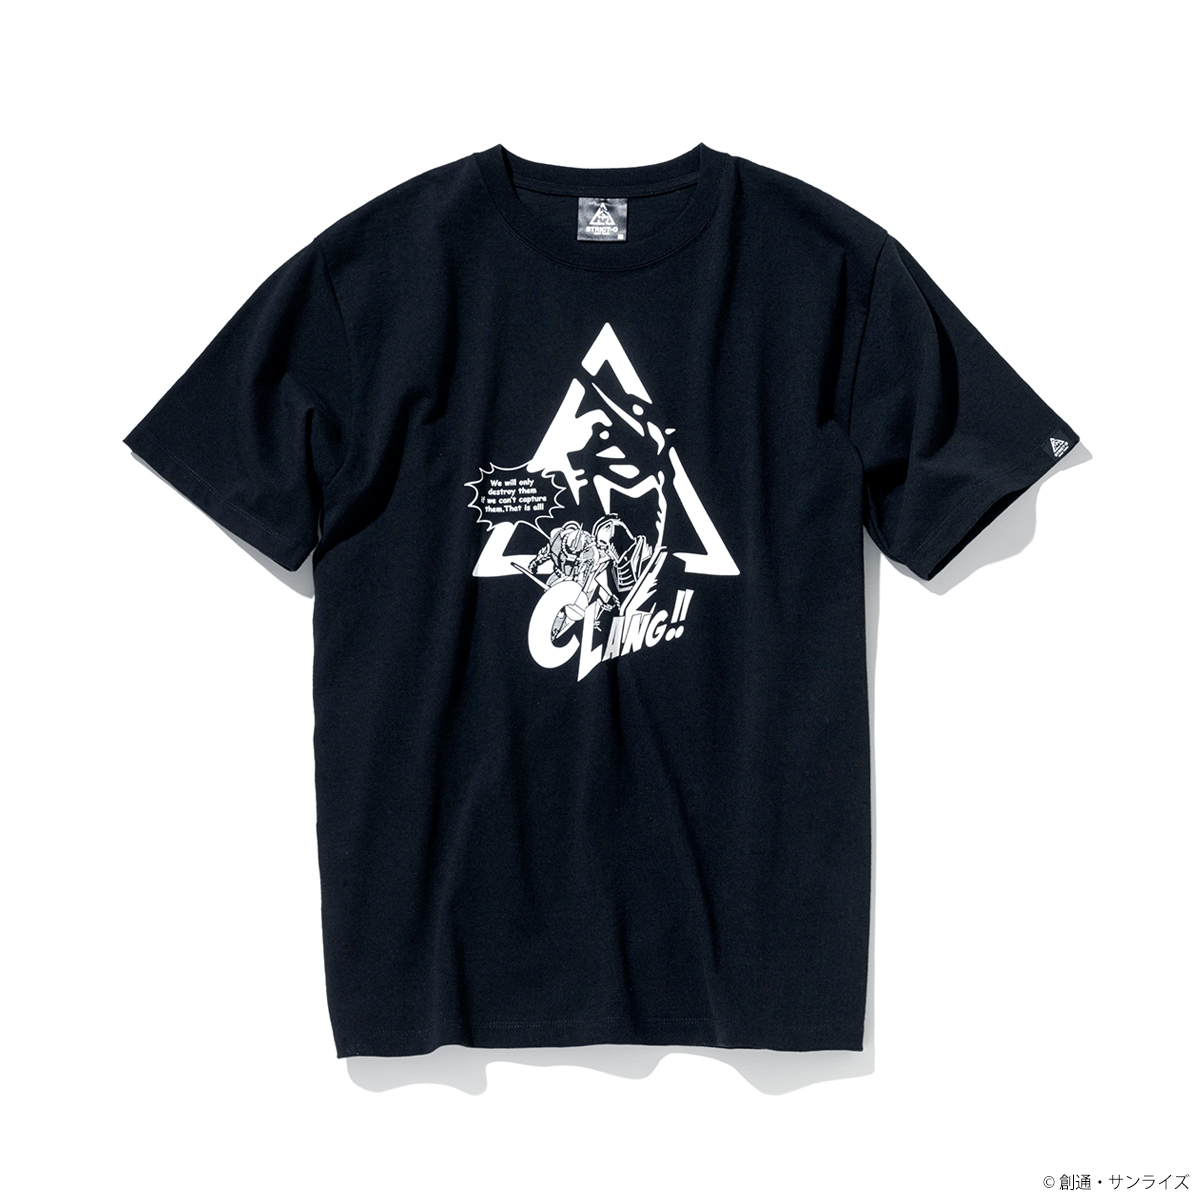 STRICT-G NEW YARK Tシャツ  トライアングルロゴコミック柄